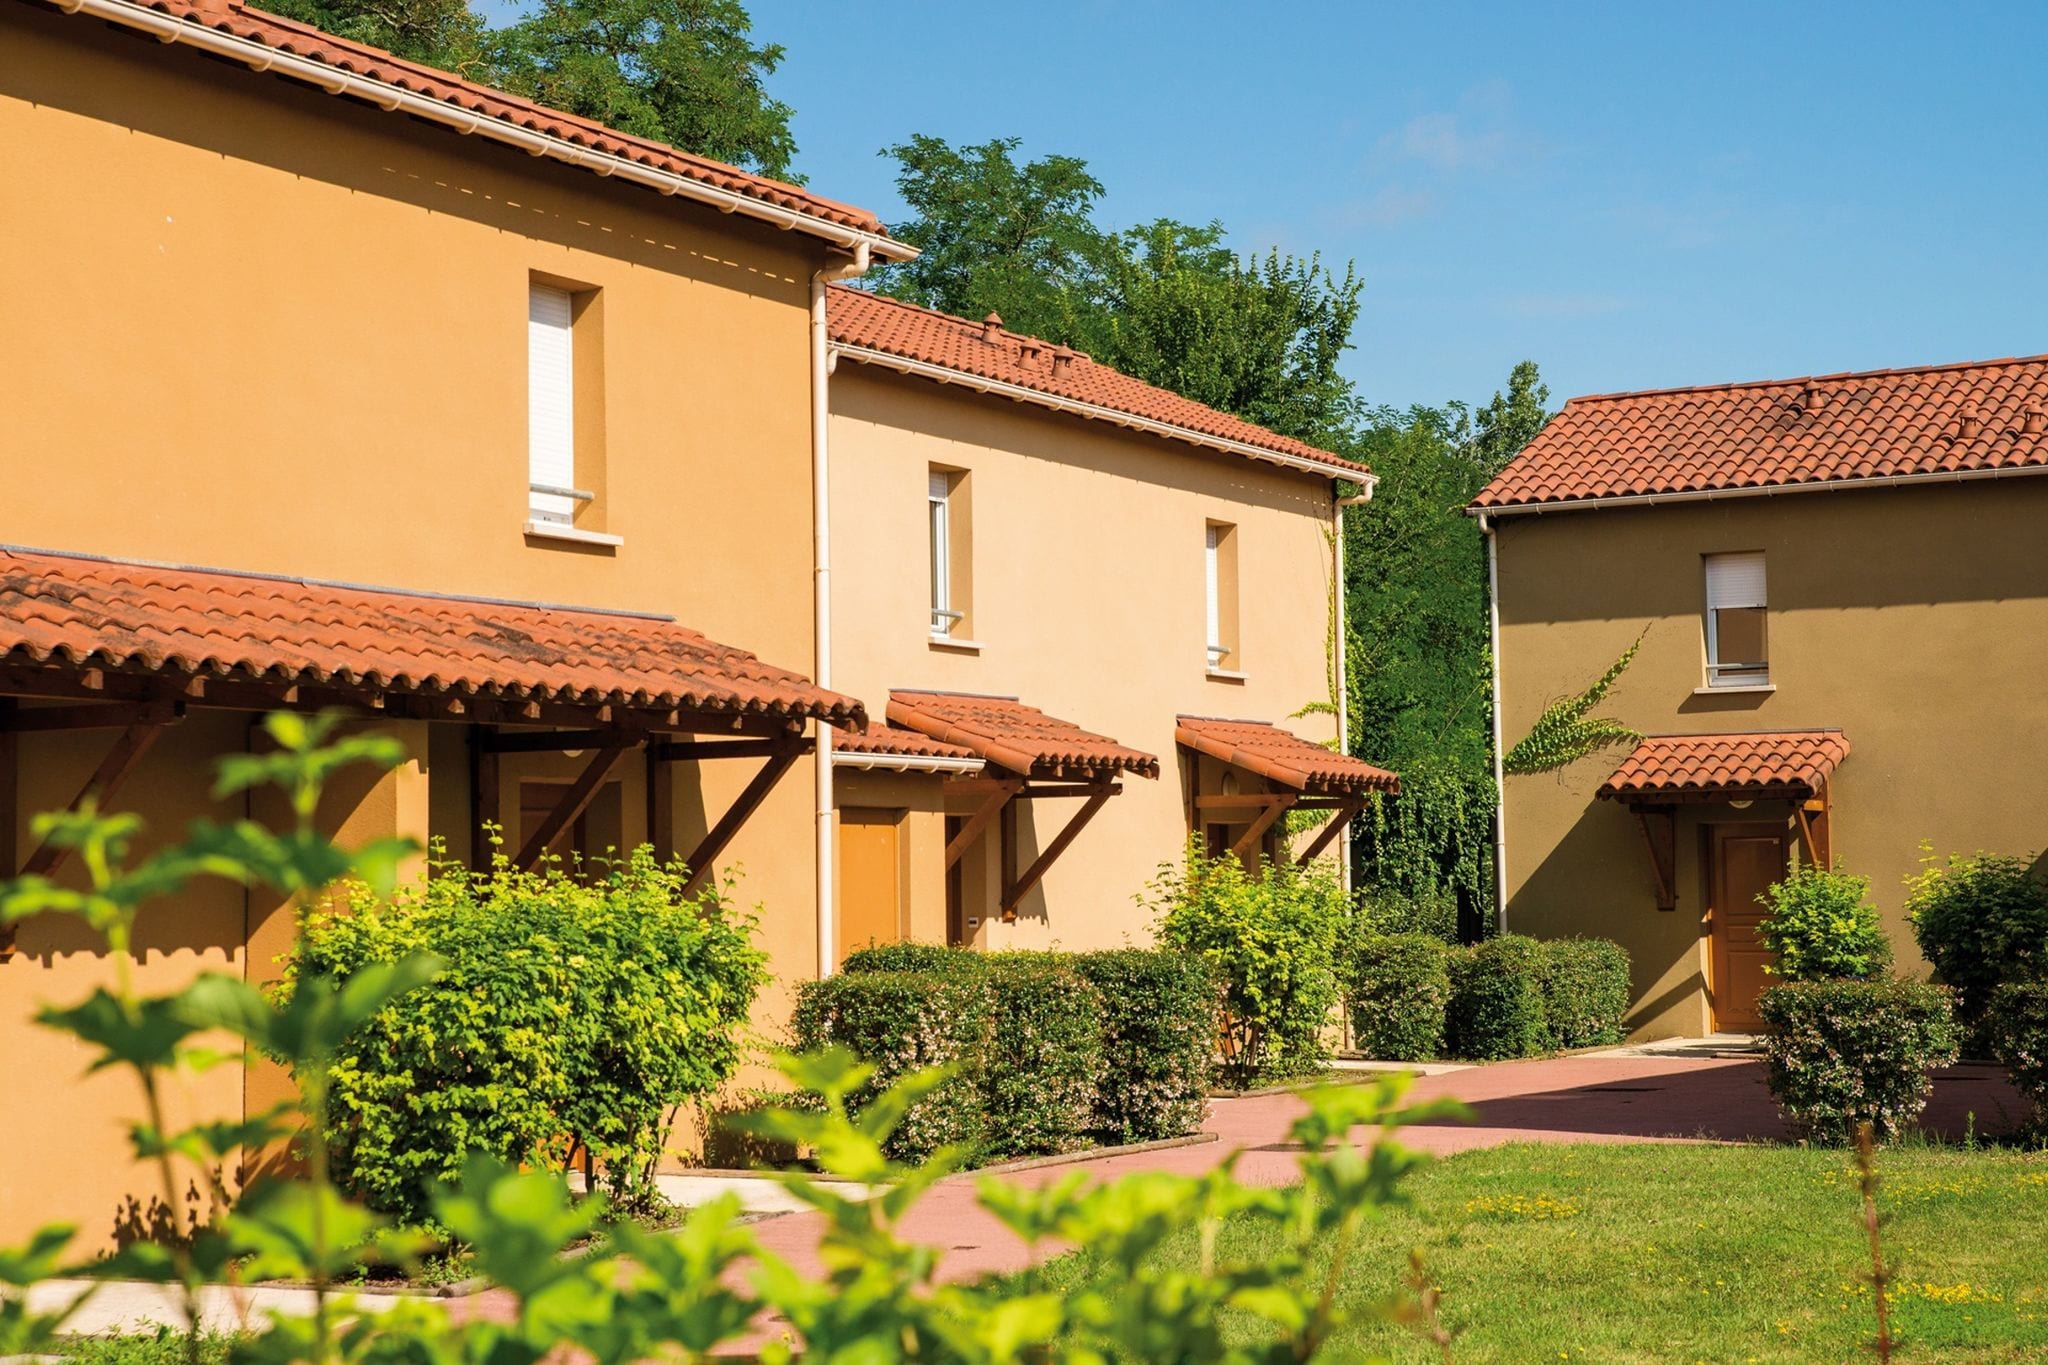 Schöne Ferienwohnung in einer malerischen Stadt in Dordogne